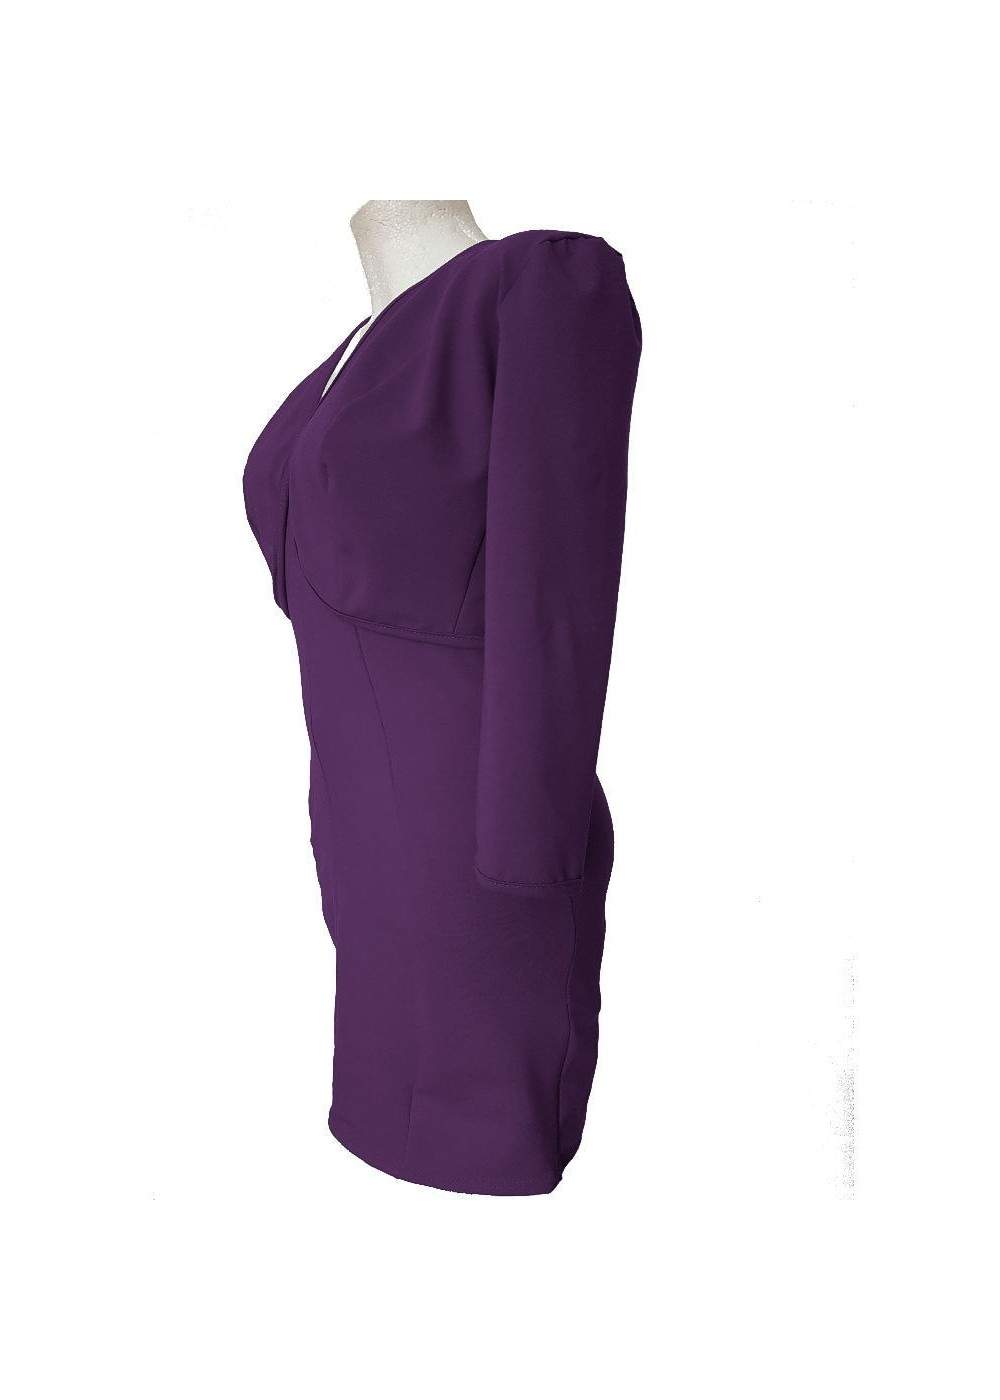 Chaqueta corta violeta y vestido de cóctel de algodón elástico - 